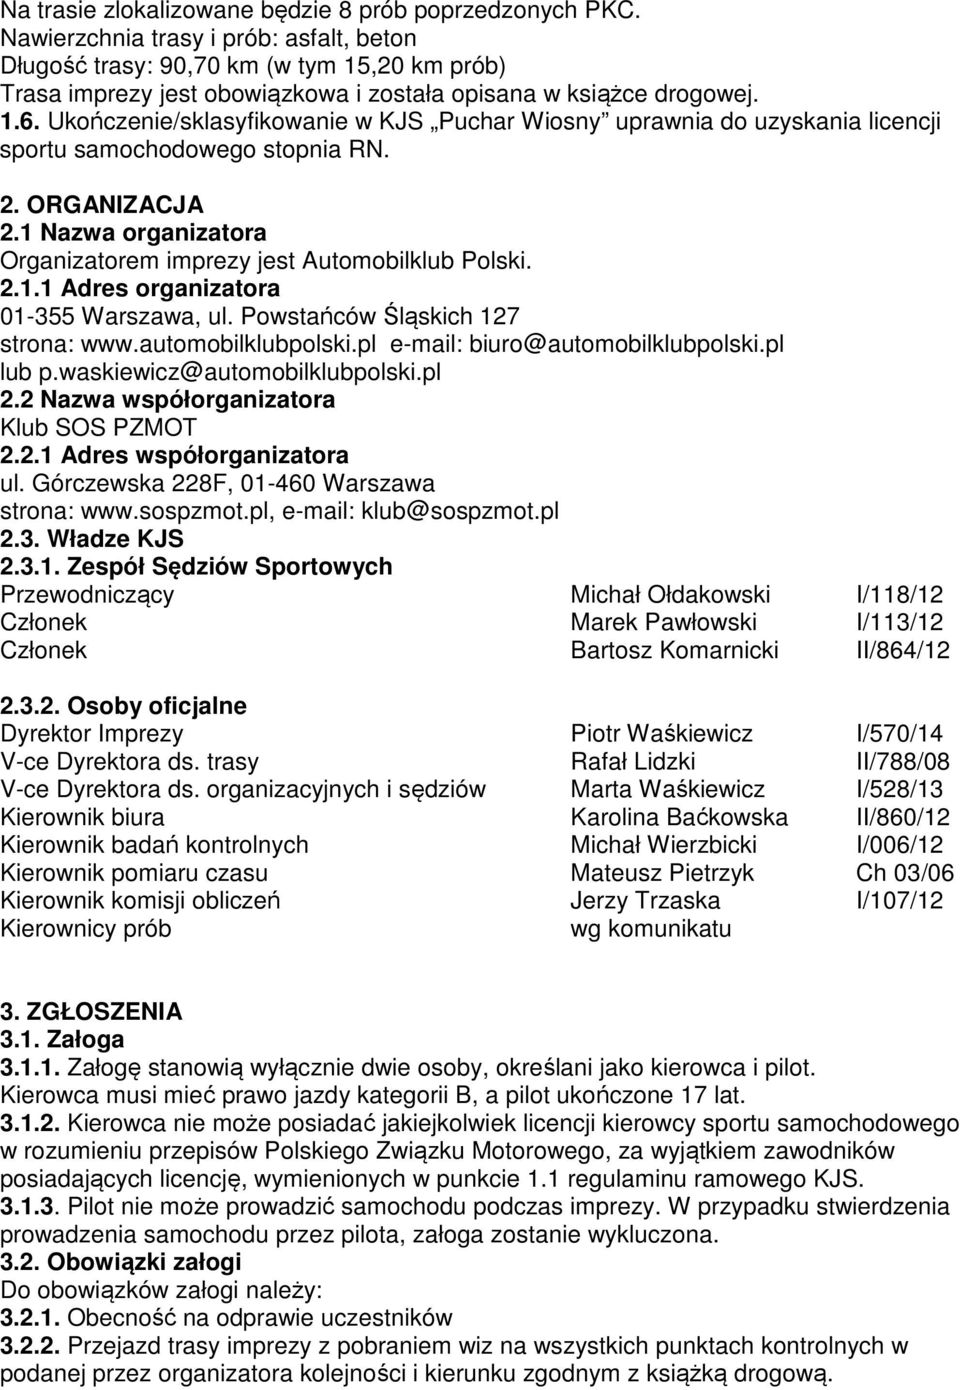 Ukończenie/sklasyfikowanie w KJS Puchar Wiosny uprawnia do uzyskania licencji sportu samochodowego stopnia RN. 2. ORGANIZACJA 2.1 Nazwa organizatora Organizatorem imprezy jest Automobilklub Polski. 2.1.1 Adres organizatora 01-355 Warszawa, ul.